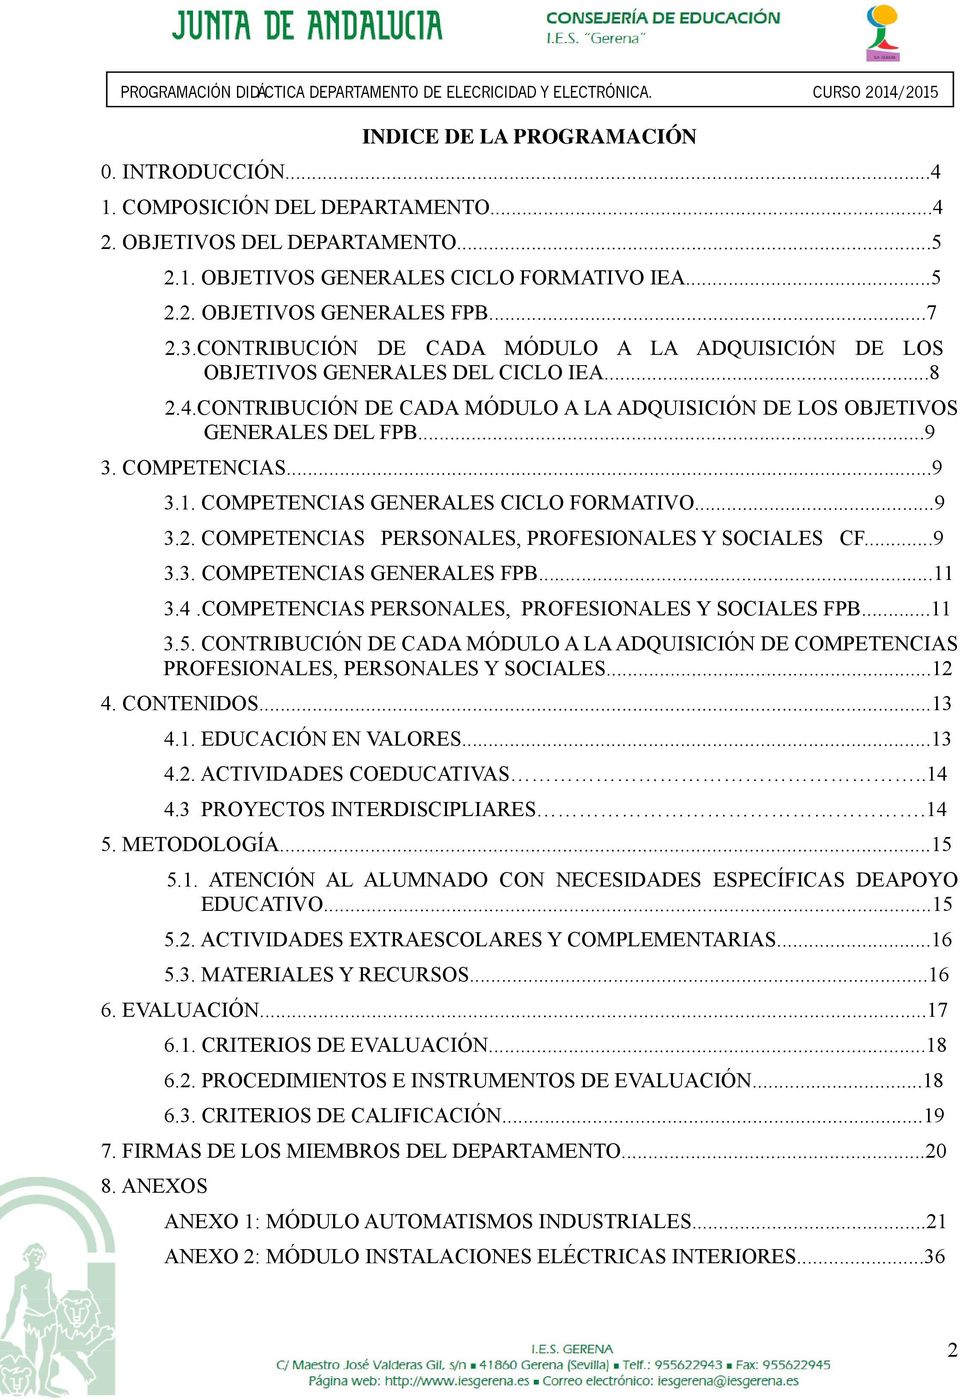 COMPETENCIAS GENERALES CICLO FORMATIVO...9 3.2. COMPETENCIAS PERSONALES, PROFESIONALES Y SOCIALES CF...9 3.3. COMPETENCIAS GENERALES FPB...11 3.4.COMPETENCIAS PERSONALES, PROFESIONALES Y SOCIALES FPB.